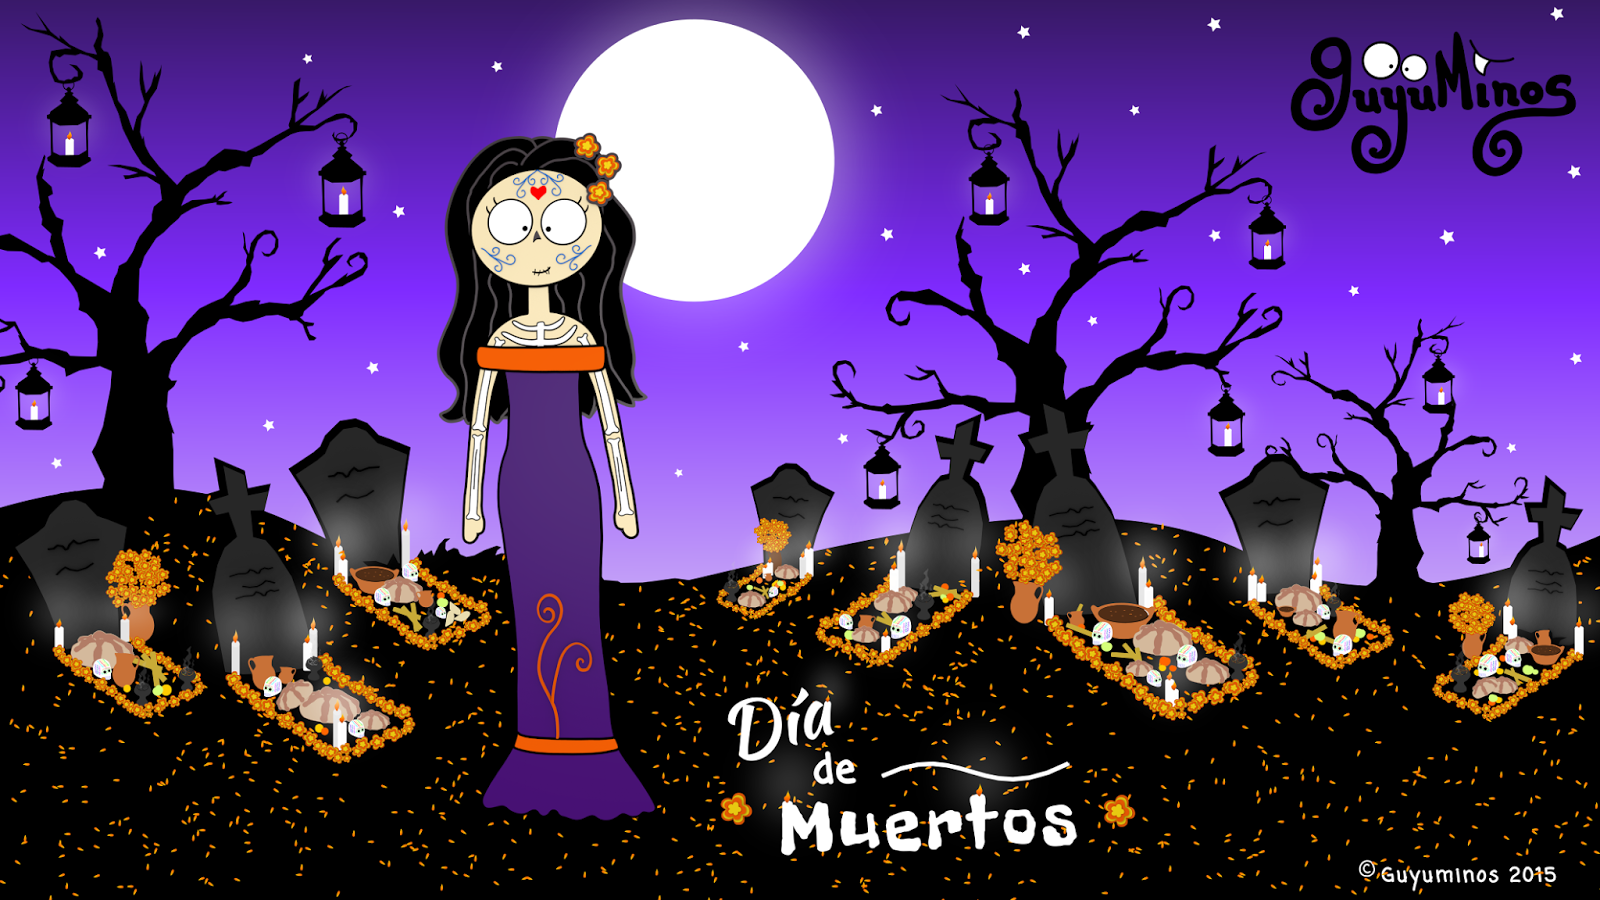 Guyuminos: Portada Google+ y Wallpaper para Día de Muertos!